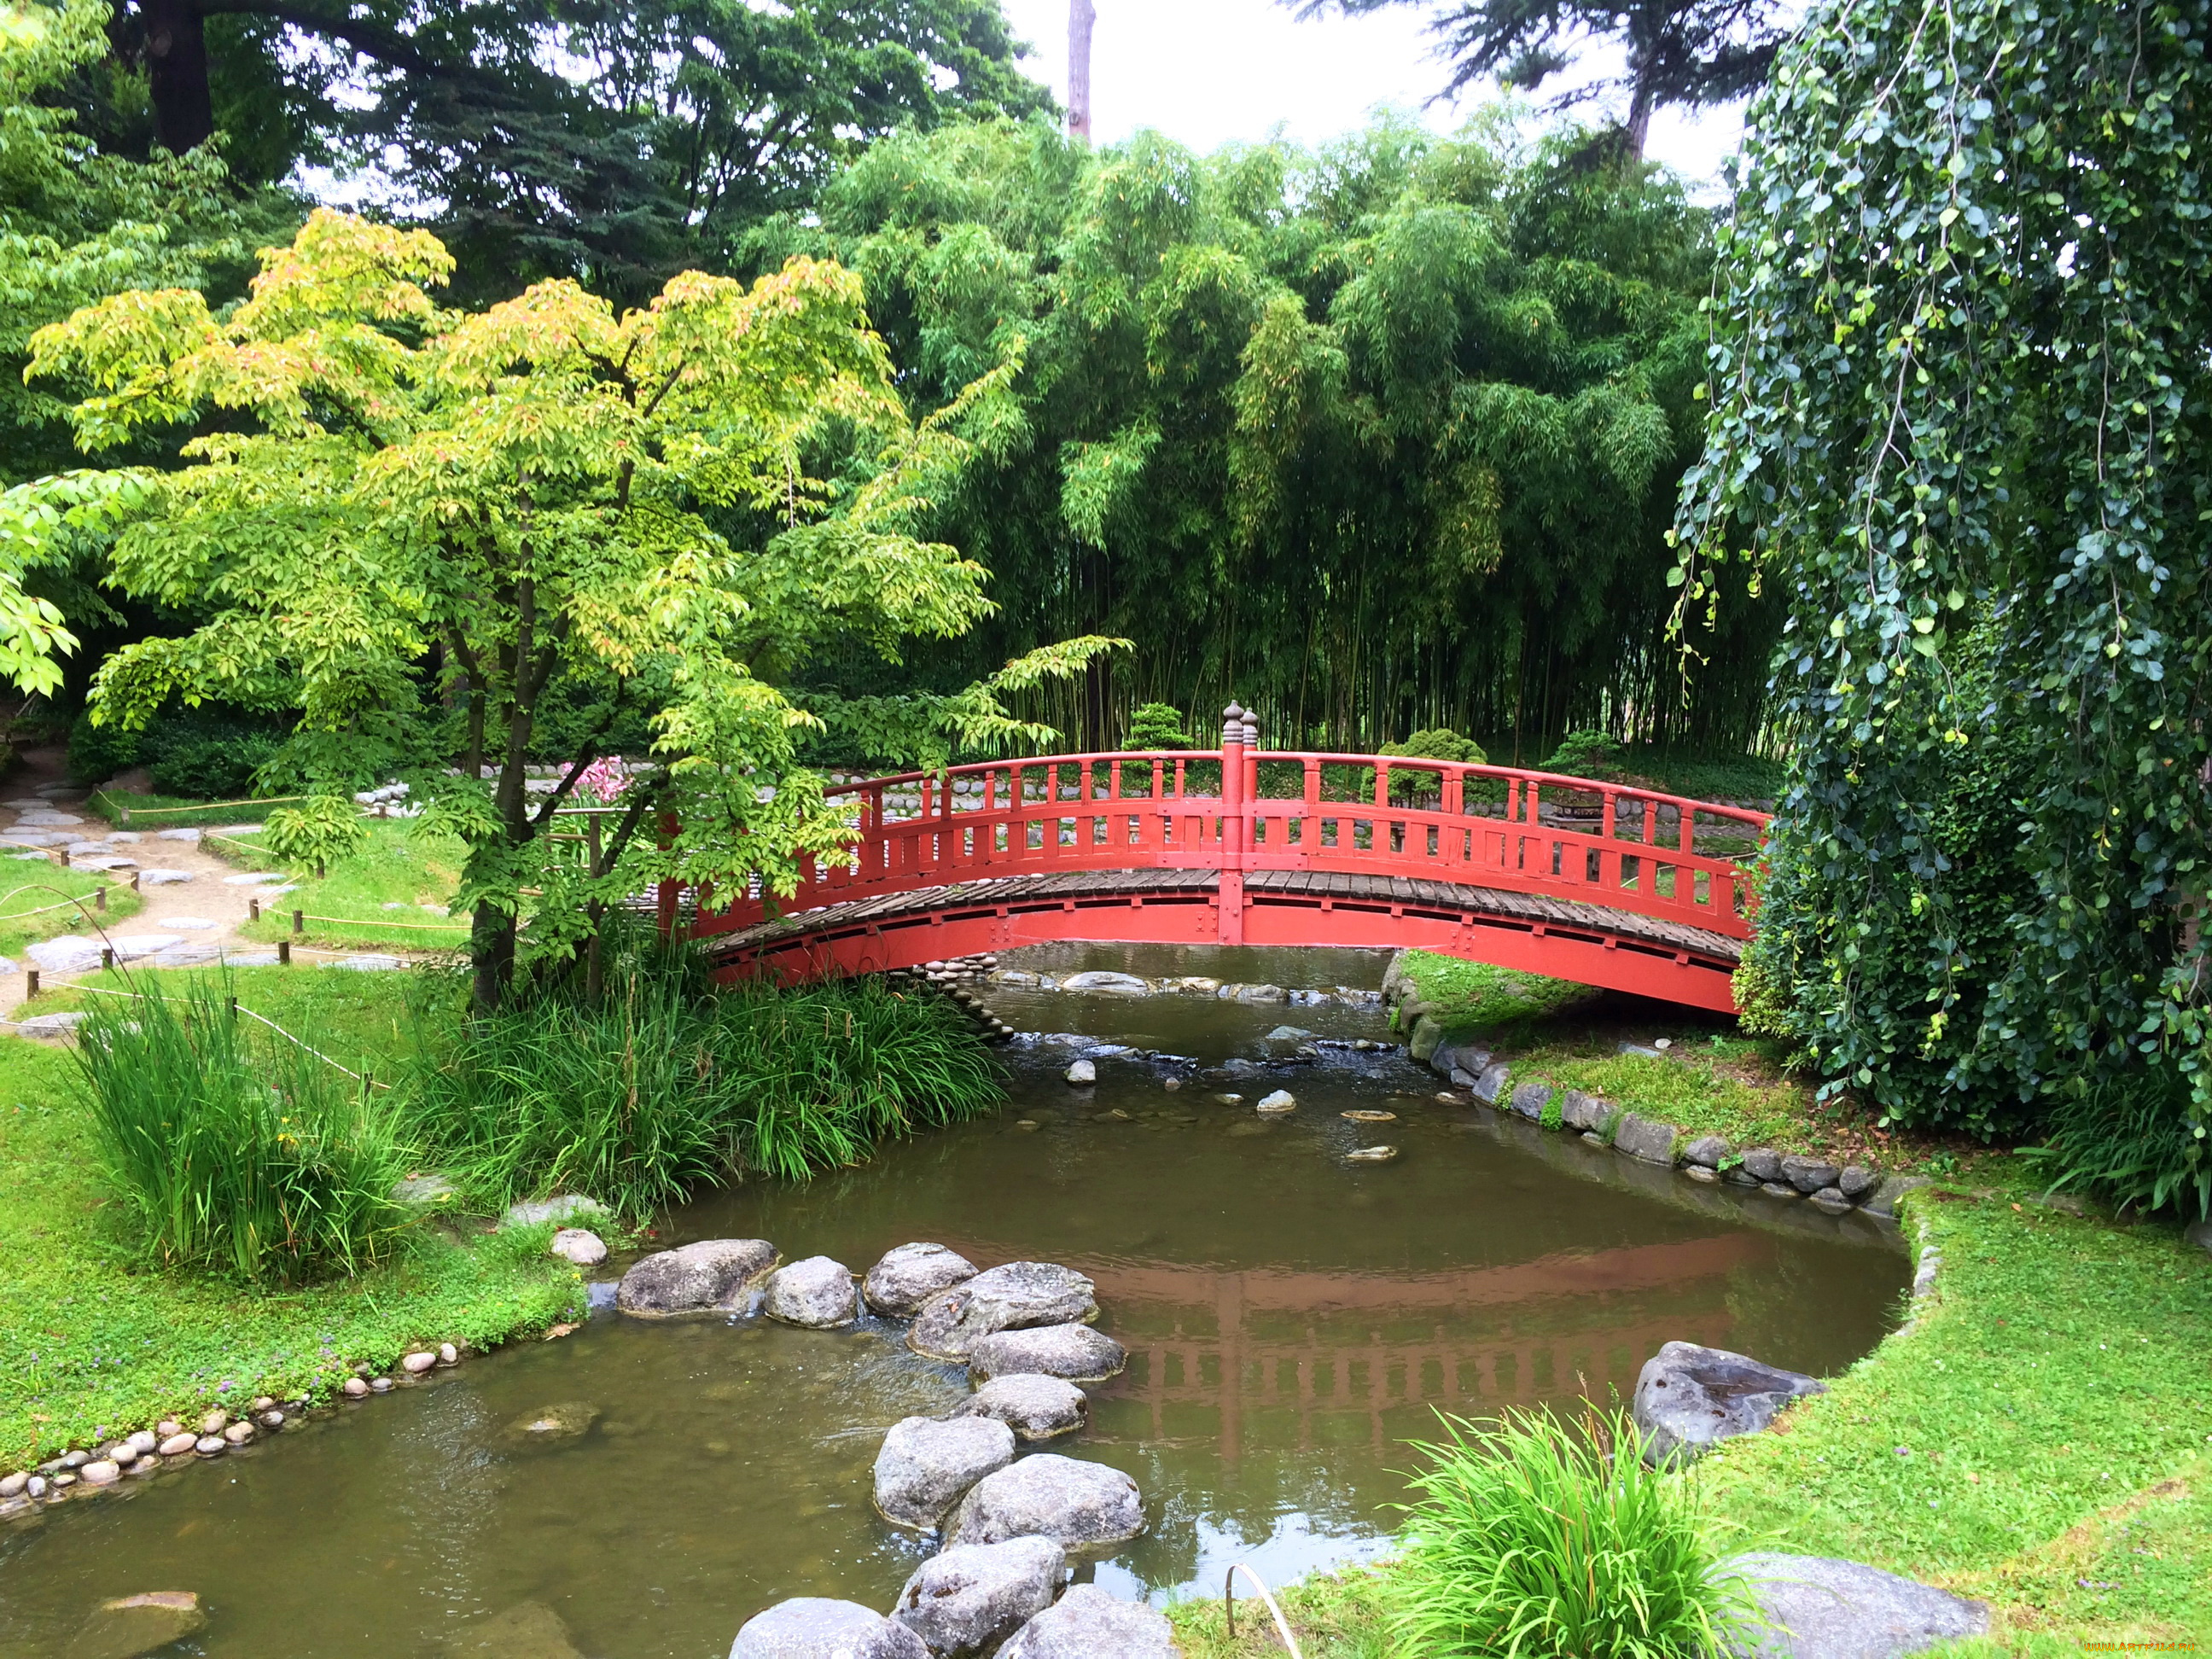 albert-kahn, japanese, gardens, природа, парк, сад, париж, река, мост, деревья, кусты, камни